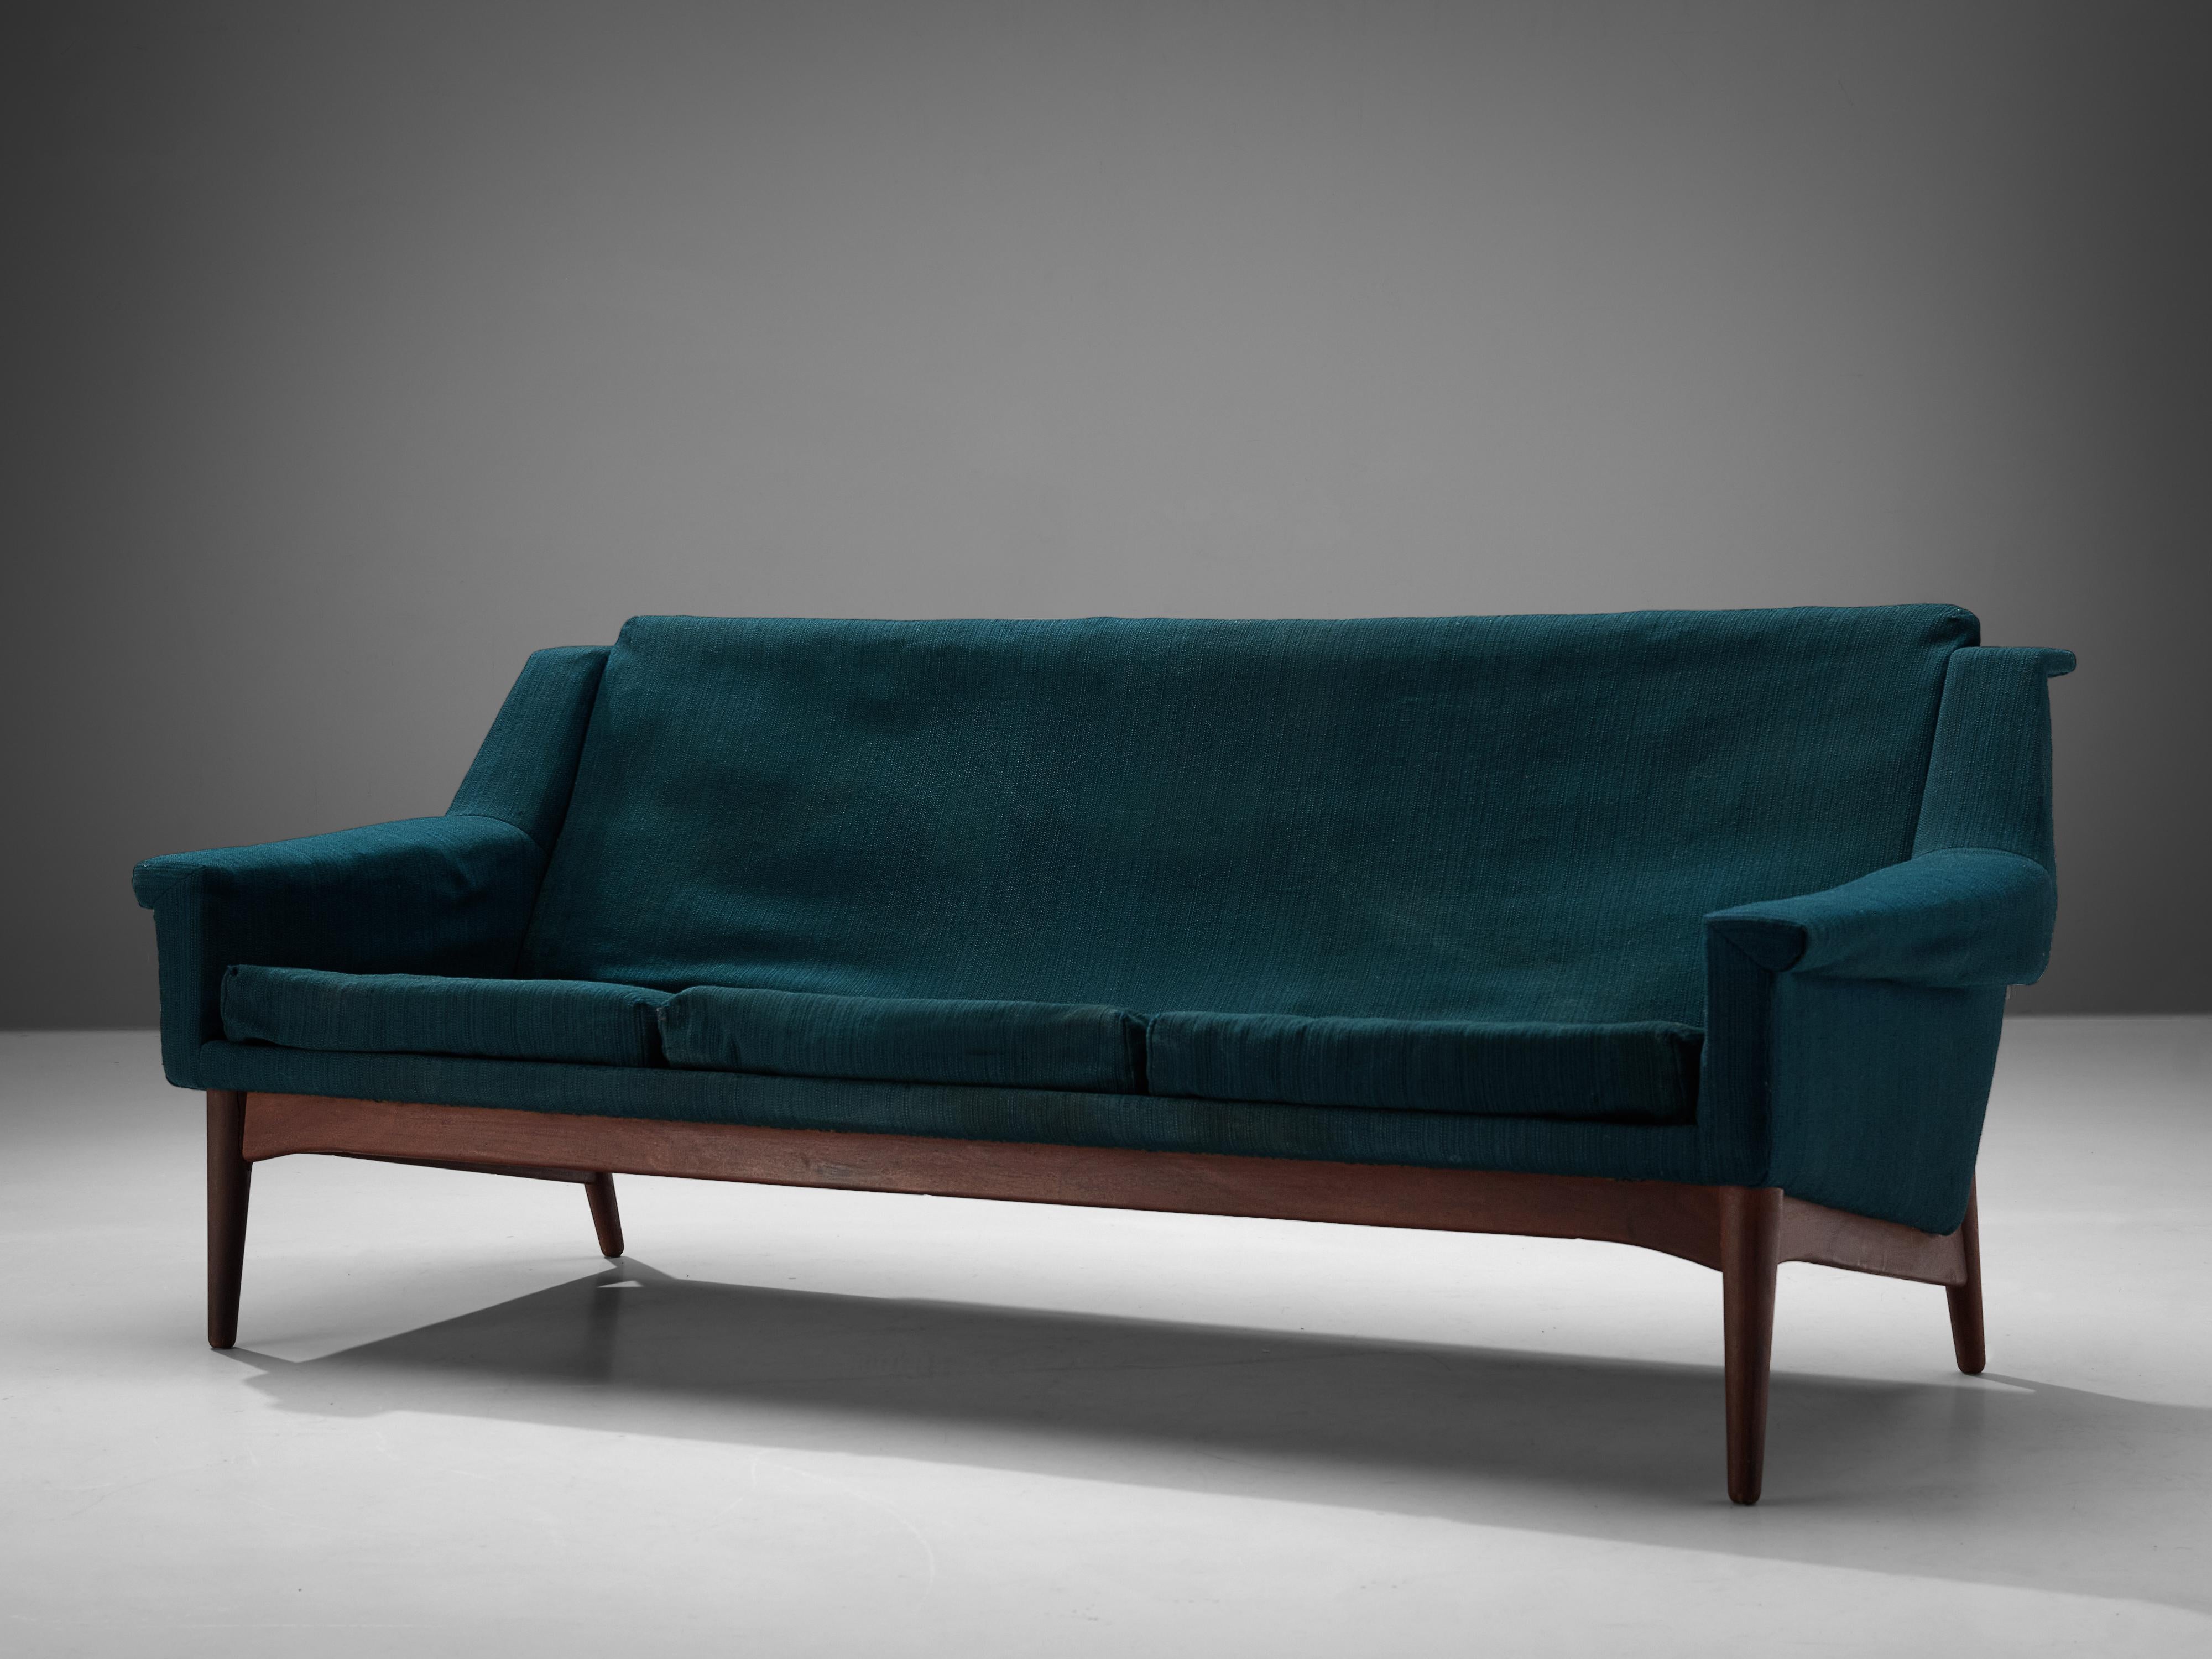 Sofa, Teakholz, Stoff, Dänemark, 1950er Jahre

Modernes skandinavisches Sofa mit schlichten, aber markanten Linien. Die Art und Weise, wie die Armlehnen nach außen gebogen sind, erinnert an die Entwürfe von Folke Ohlsson. Betrachtet man das Sofa von